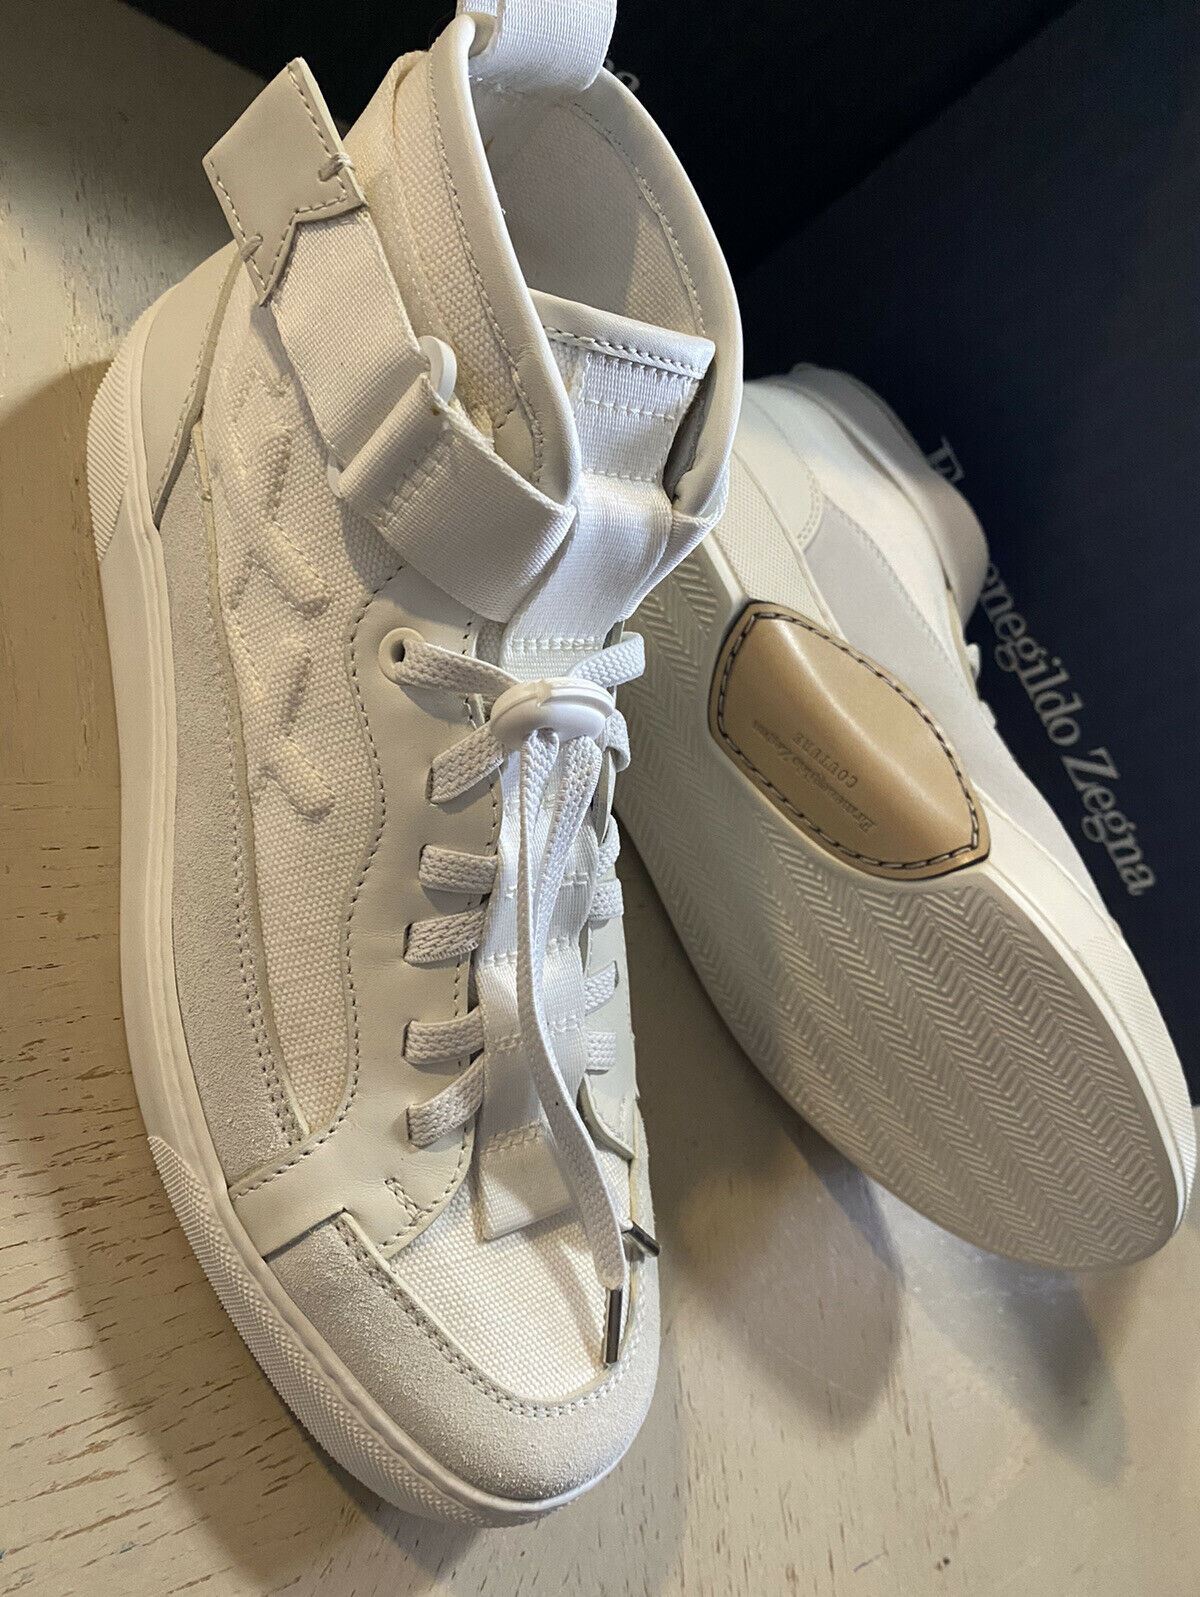 Neue $795 Ermenegildo Zegna Couture High Top Sneakers Schuhe Weiß/Grau 8 US Italien